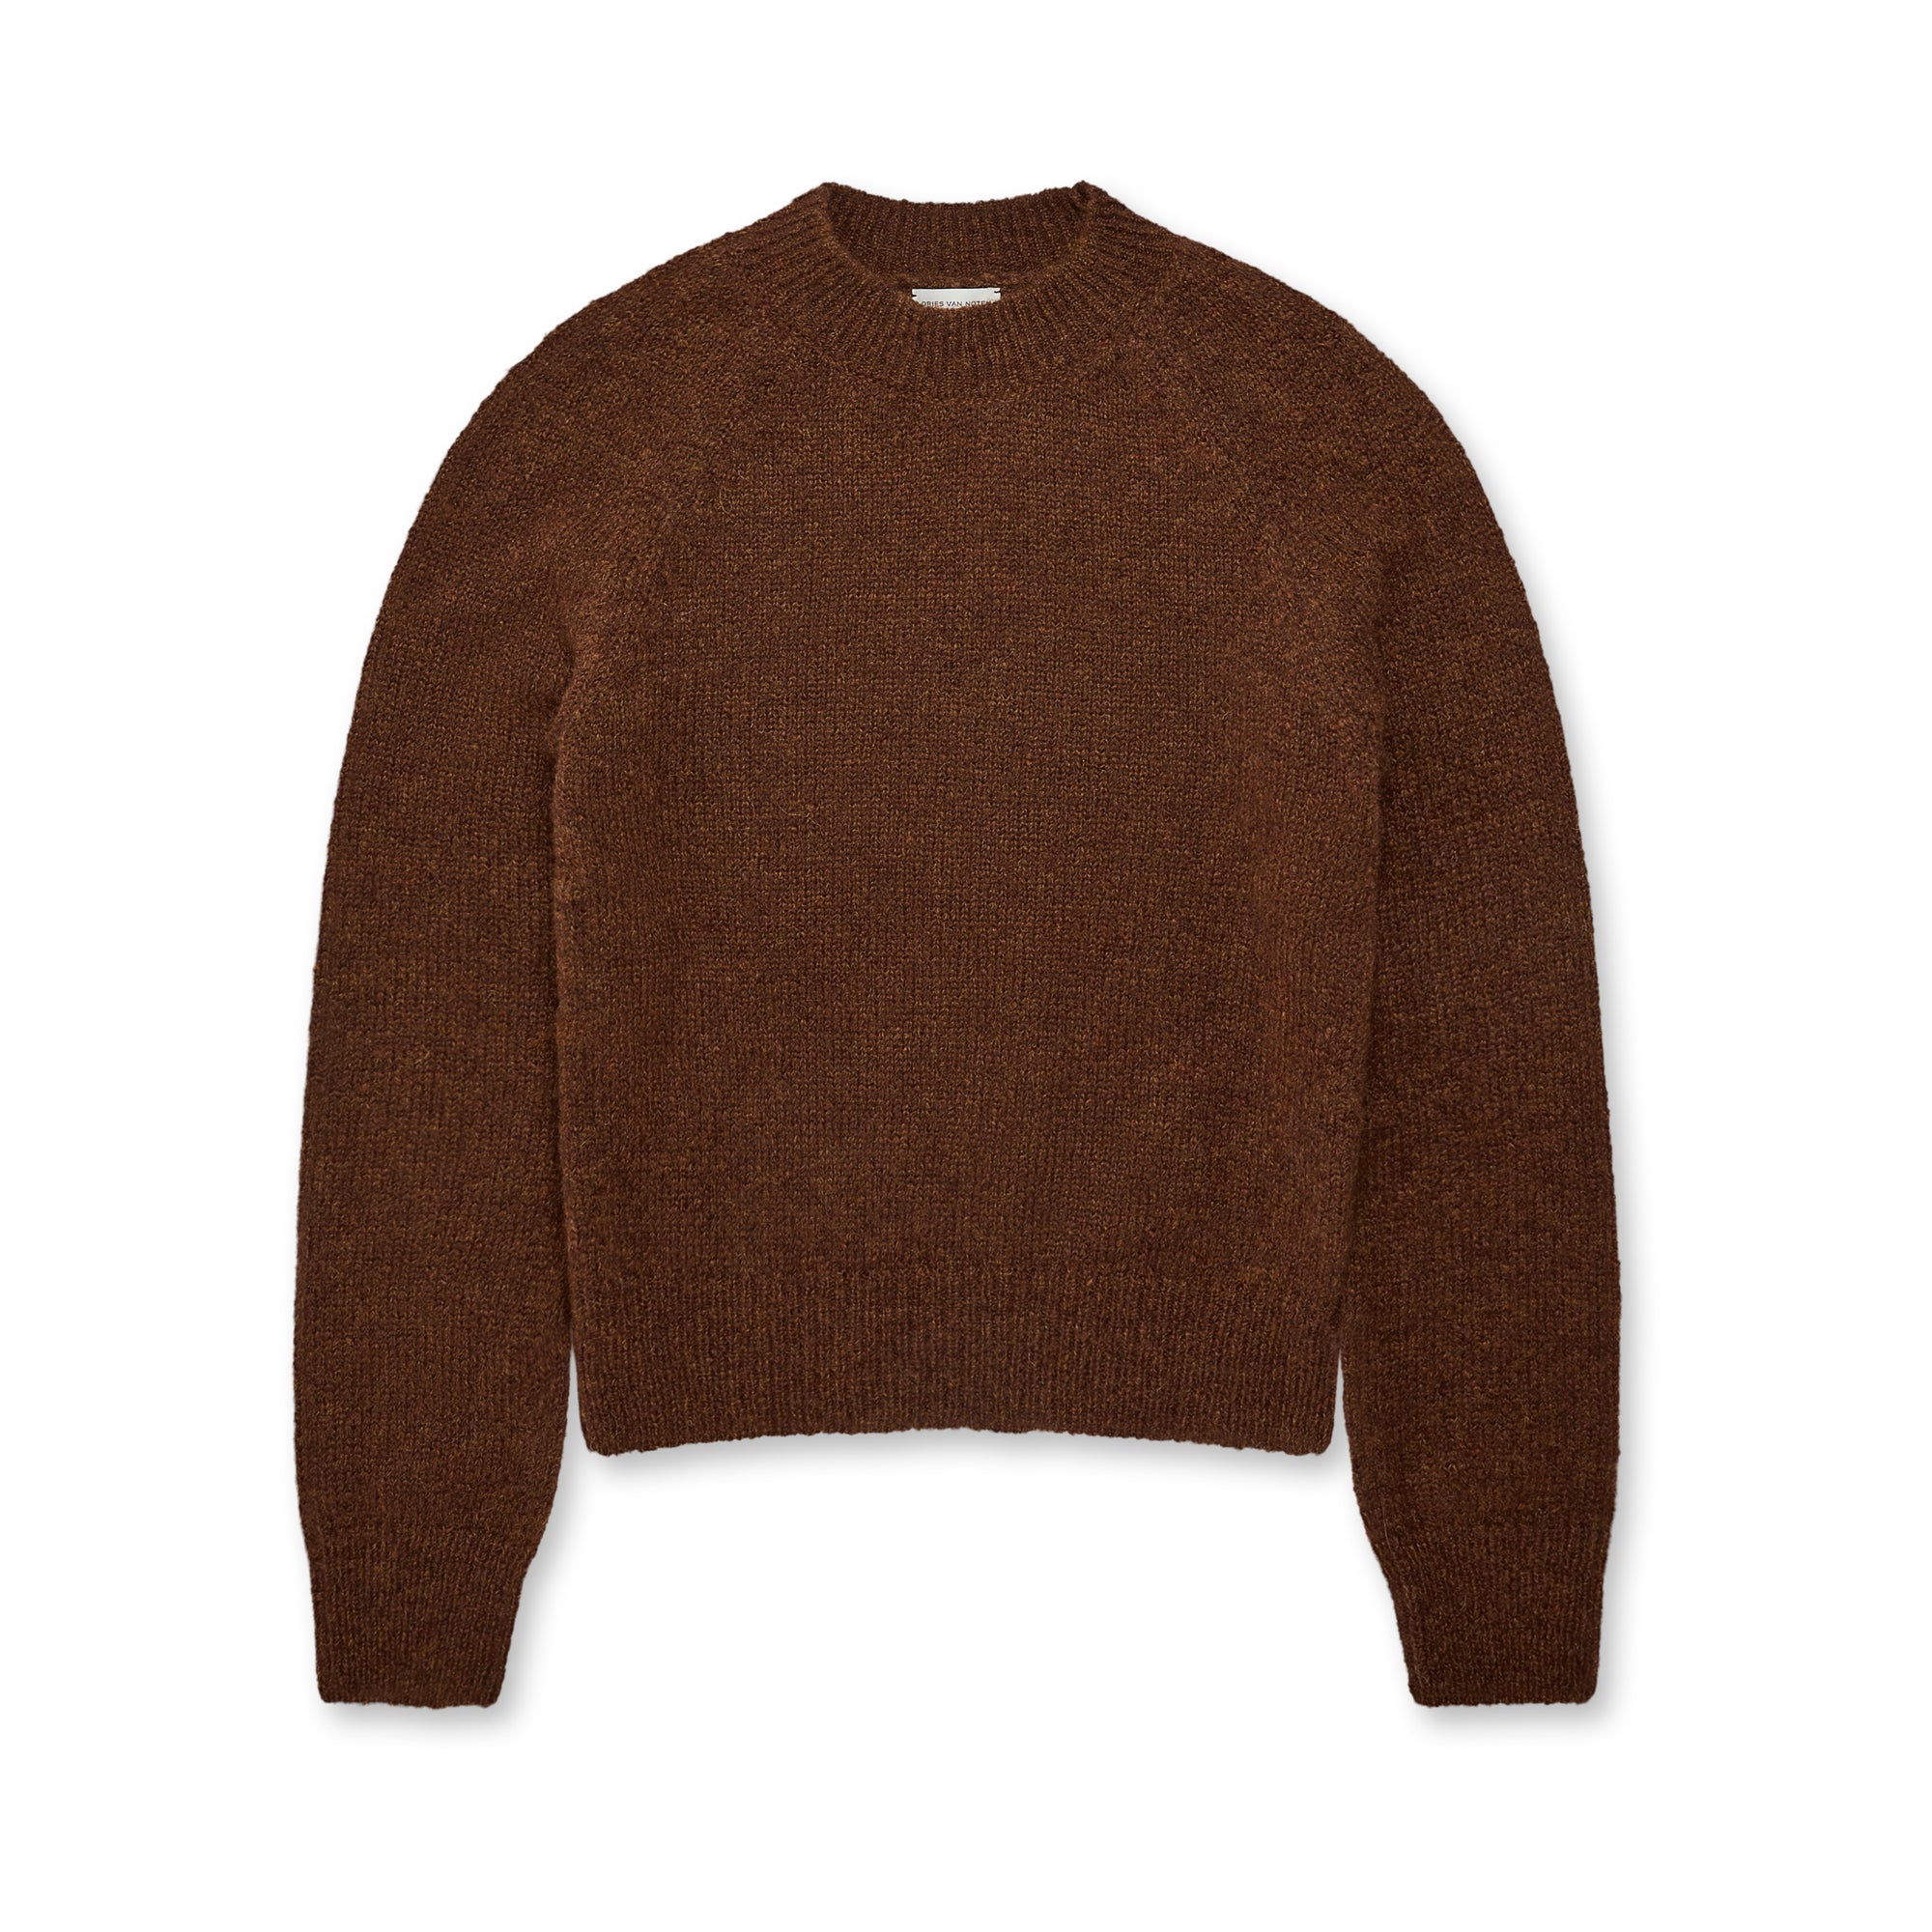 Dries Van Noten - Women’s Fitted Sweater - (Brown) view 5